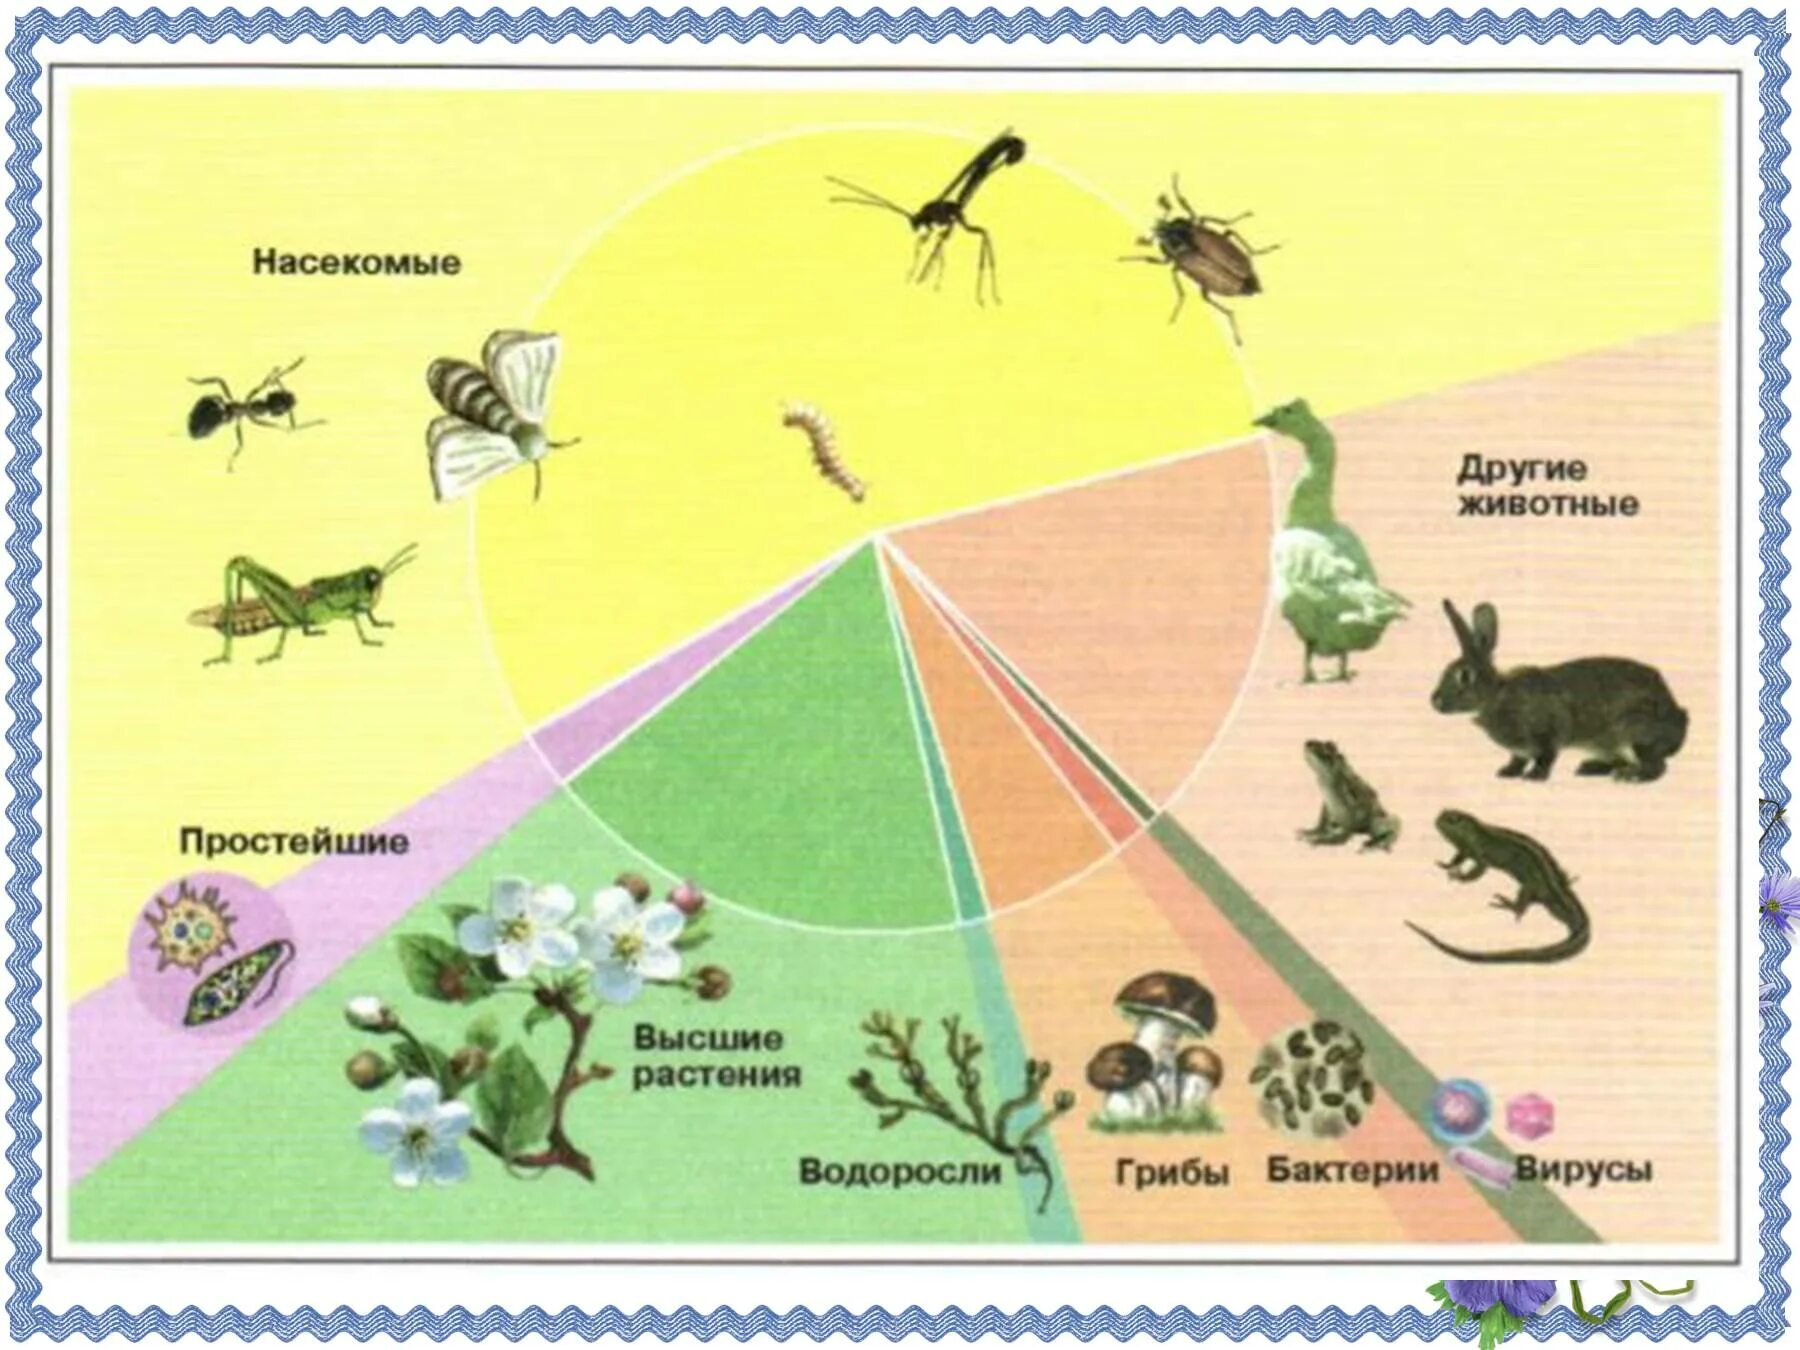 Многообразие организмов на нашей планете. Число видов насекомых. Число видов живых организмов на земле. Численность видов животных. Многообразие видов на земле.